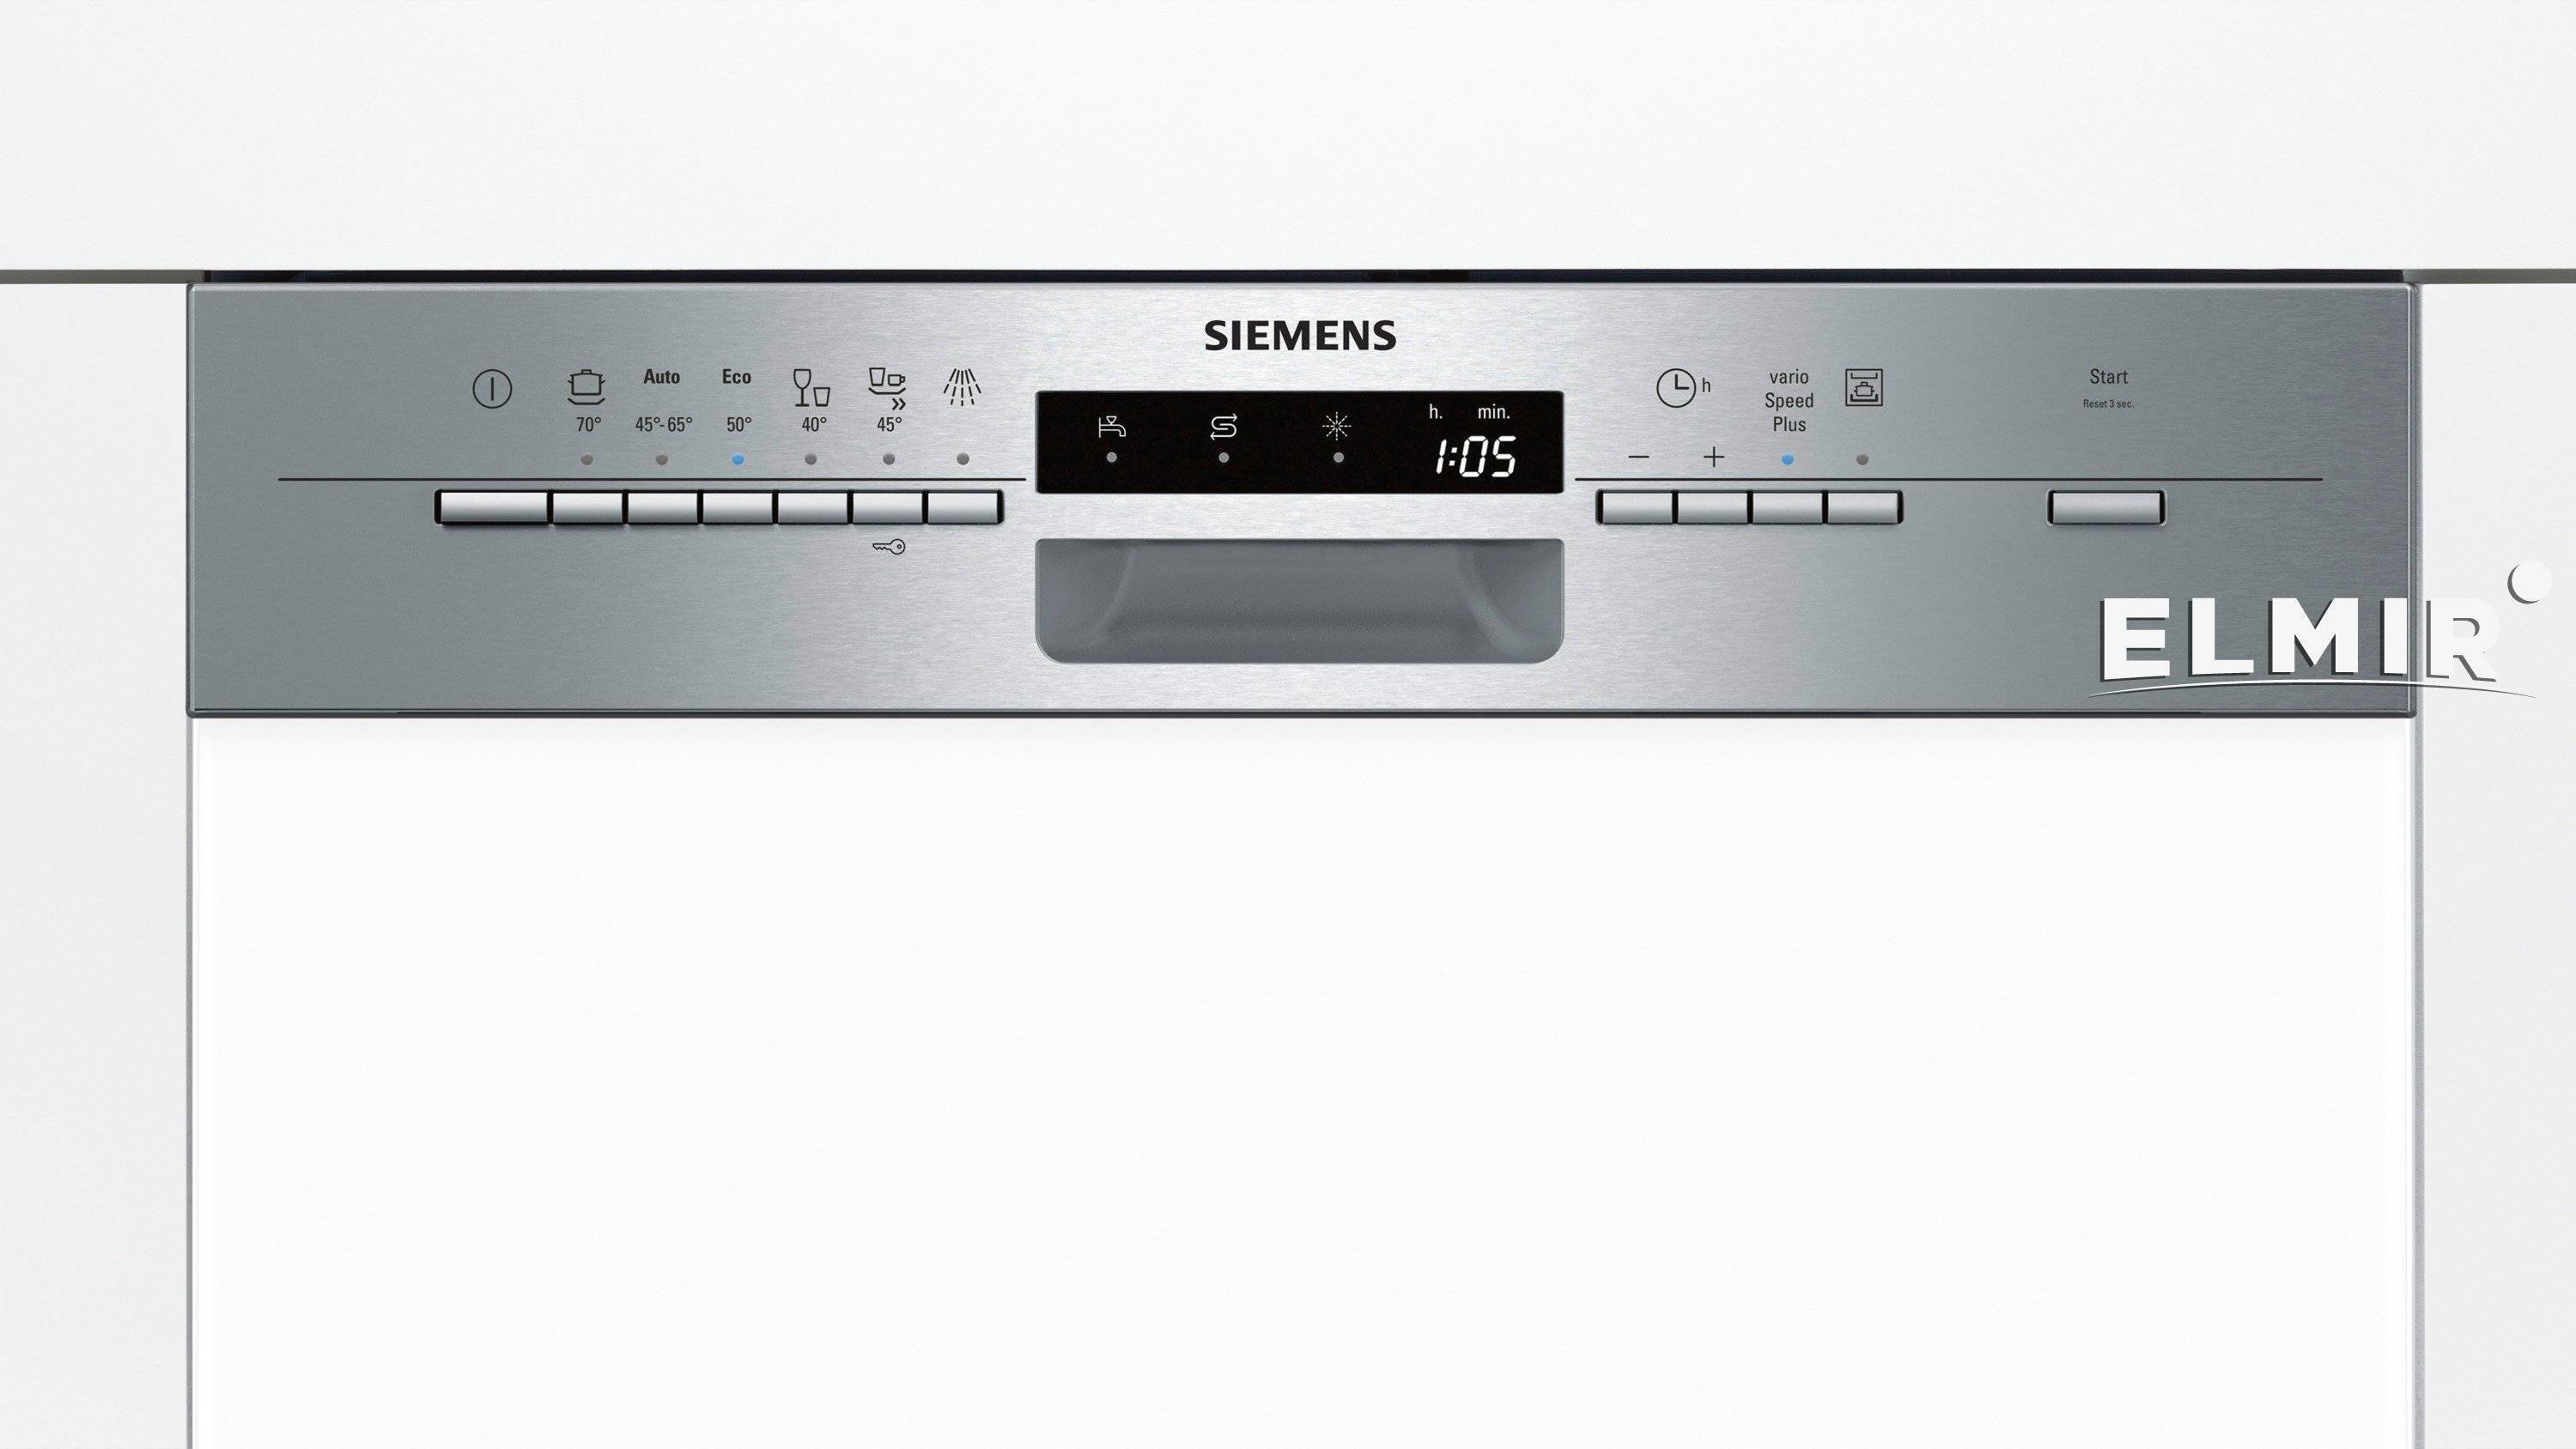 Лучшие посудомоечные машины siemens: рейтинг моделей, технические характеристики, достоинства и недостатки. обзор посудомоечных машин сименс (siemens) 60 см